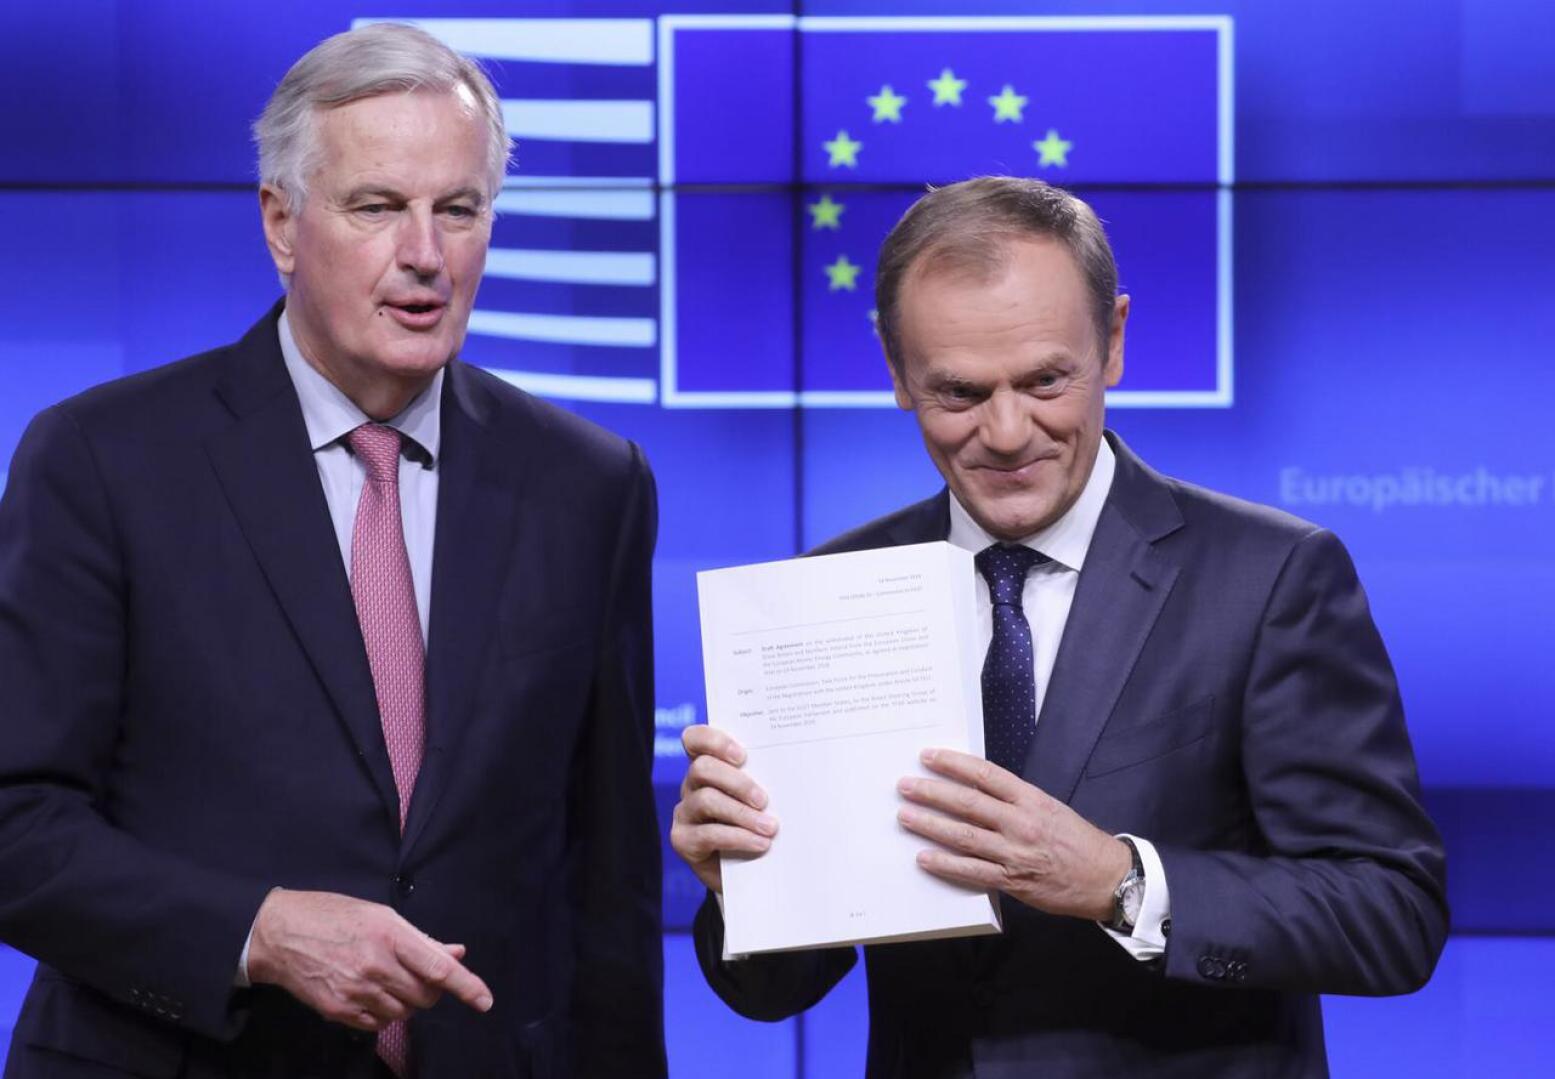 Tässä se on! EU:n brexit-neuvottelija Michel Barnier (vas.) ja Eurooppa-neuvoston puheenjohtaja Donald Tusk esittelivät brexit-sopimusluonnosta Brysselissä torstaina.